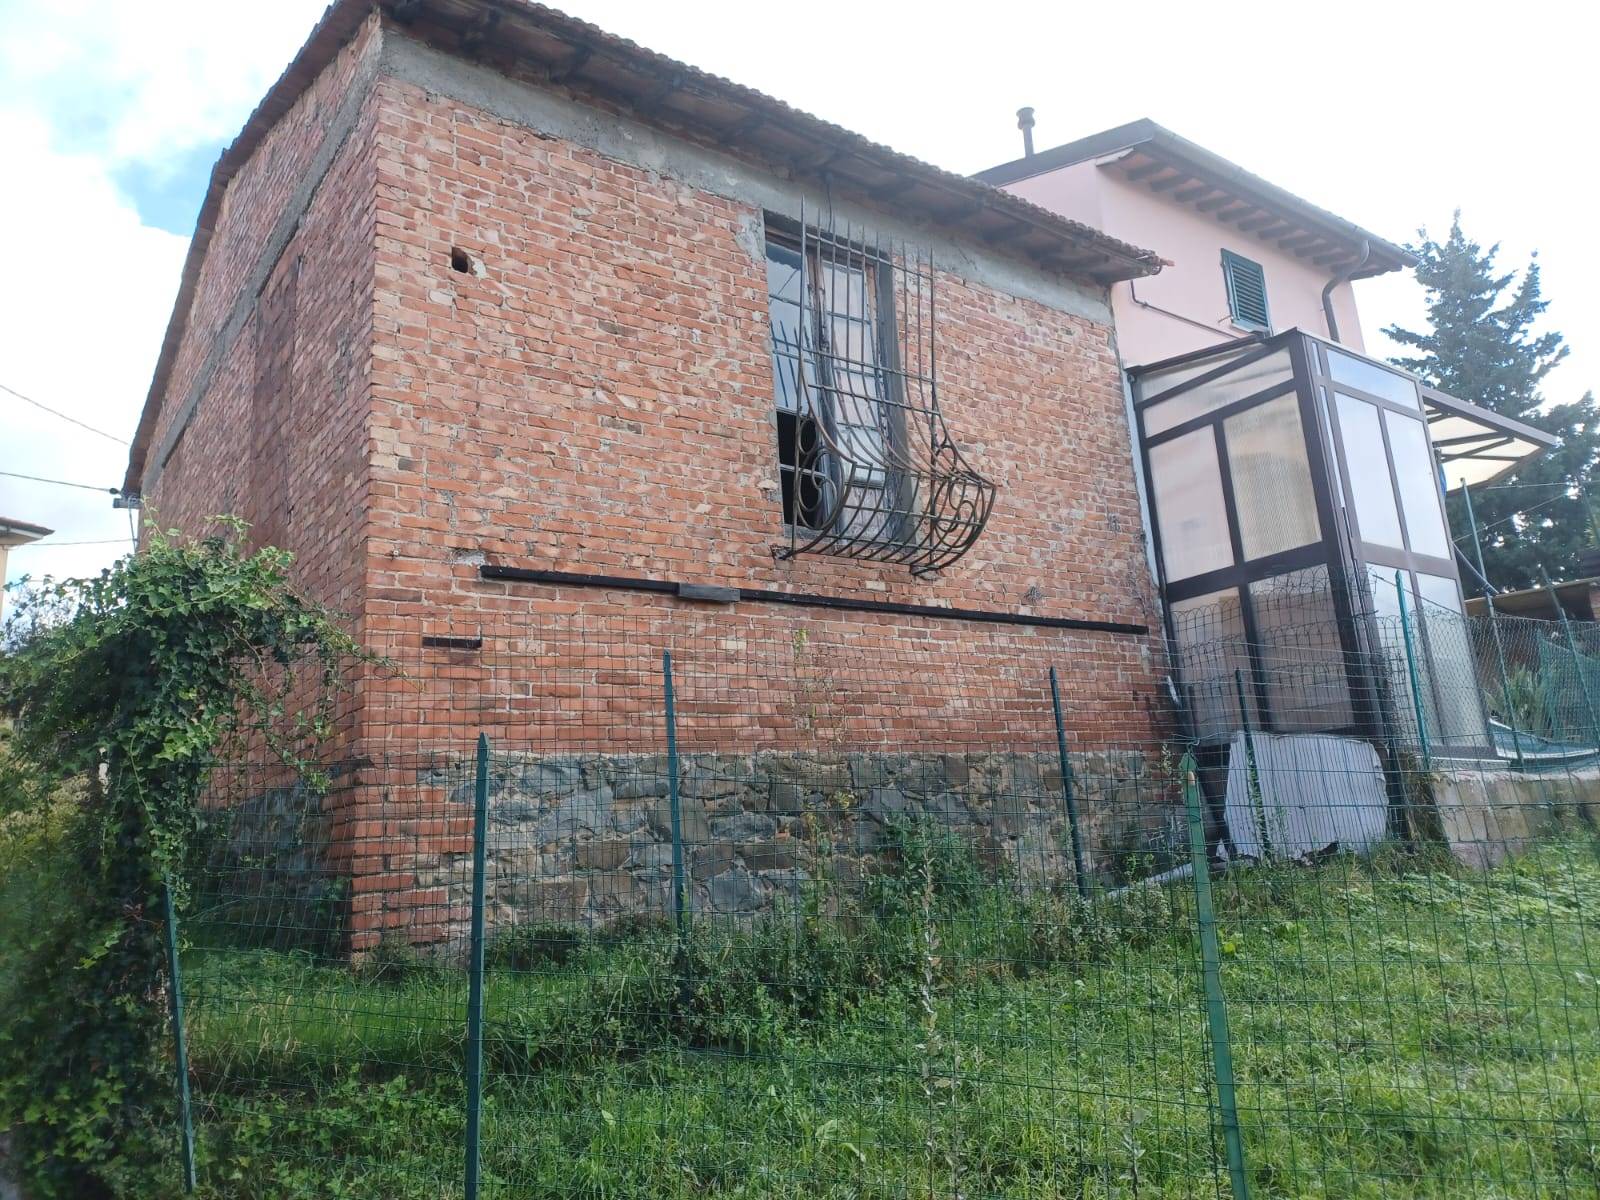 Rustico / Casale in vendita a Lamporecchio, 1 locali, zona Località: FORNELLO, prezzo € 55.000 | PortaleAgenzieImmobiliari.it